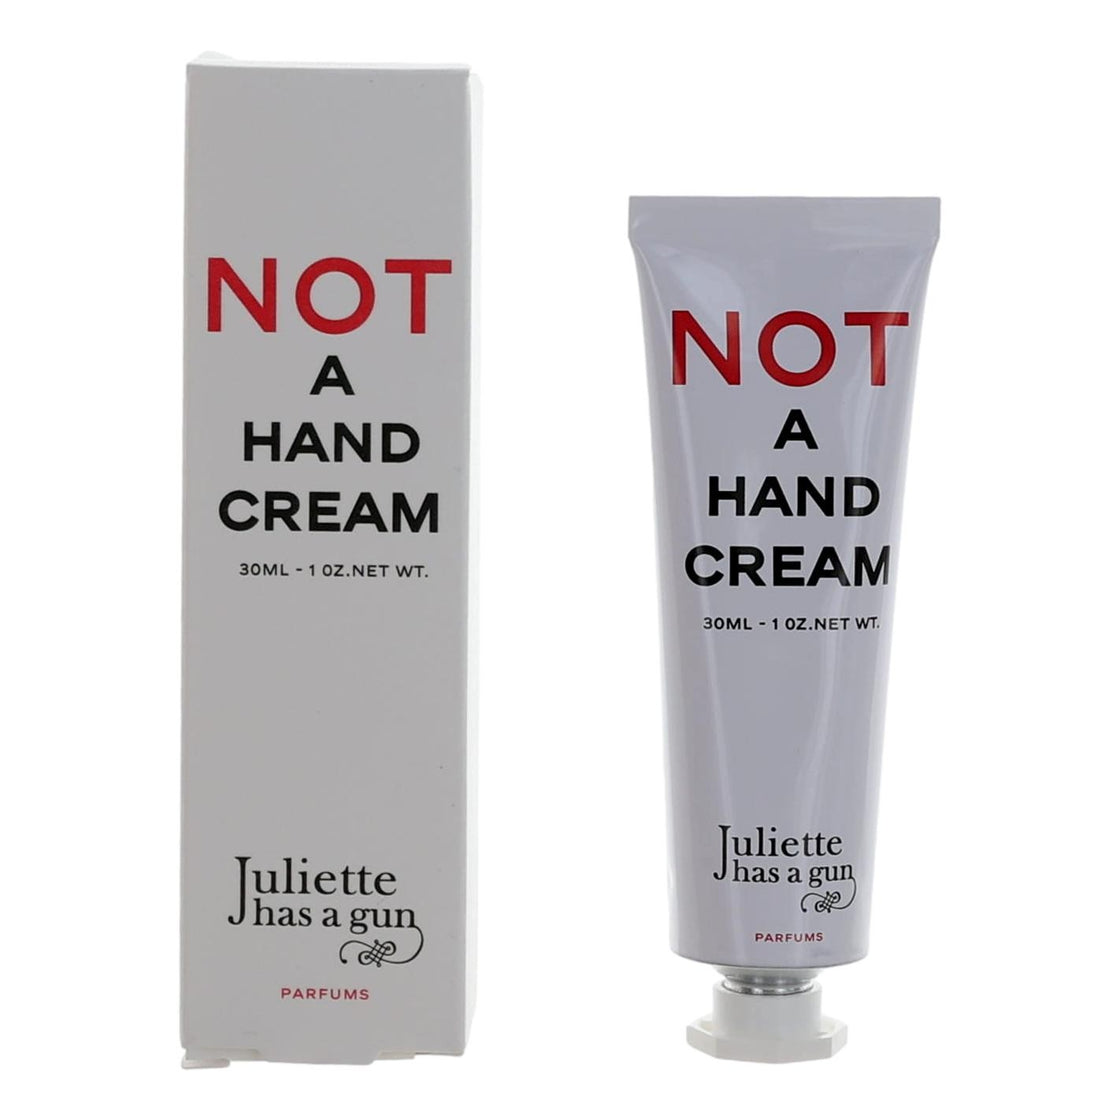 Not A Hand Cream By Juliette Has A Gun, 1 Oz Hand Cream For Women